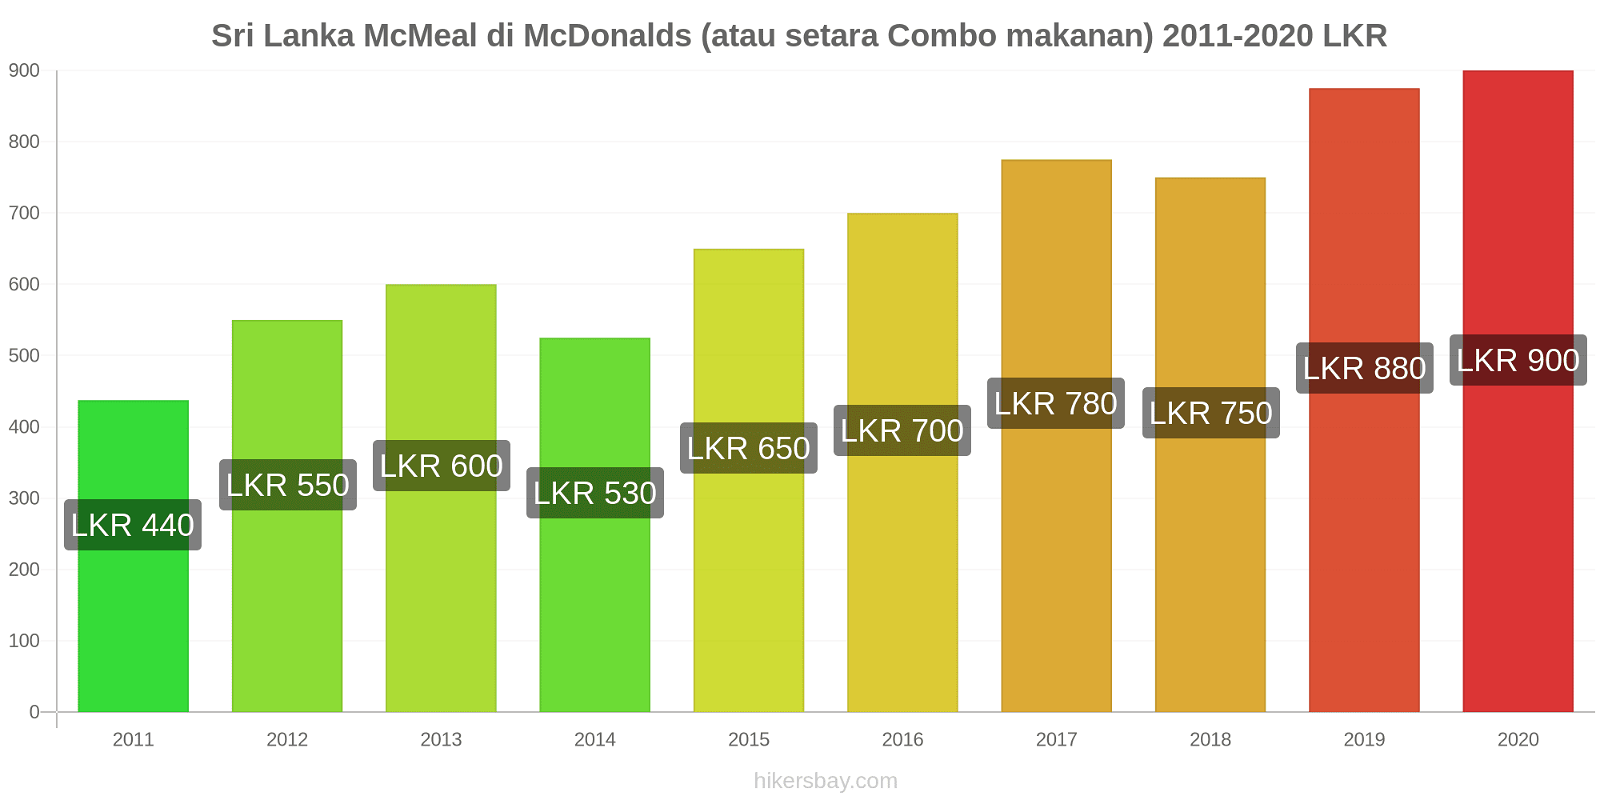 Sri Lanka perubahan harga McMeal di McDonalds (atau setara Combo makanan) hikersbay.com